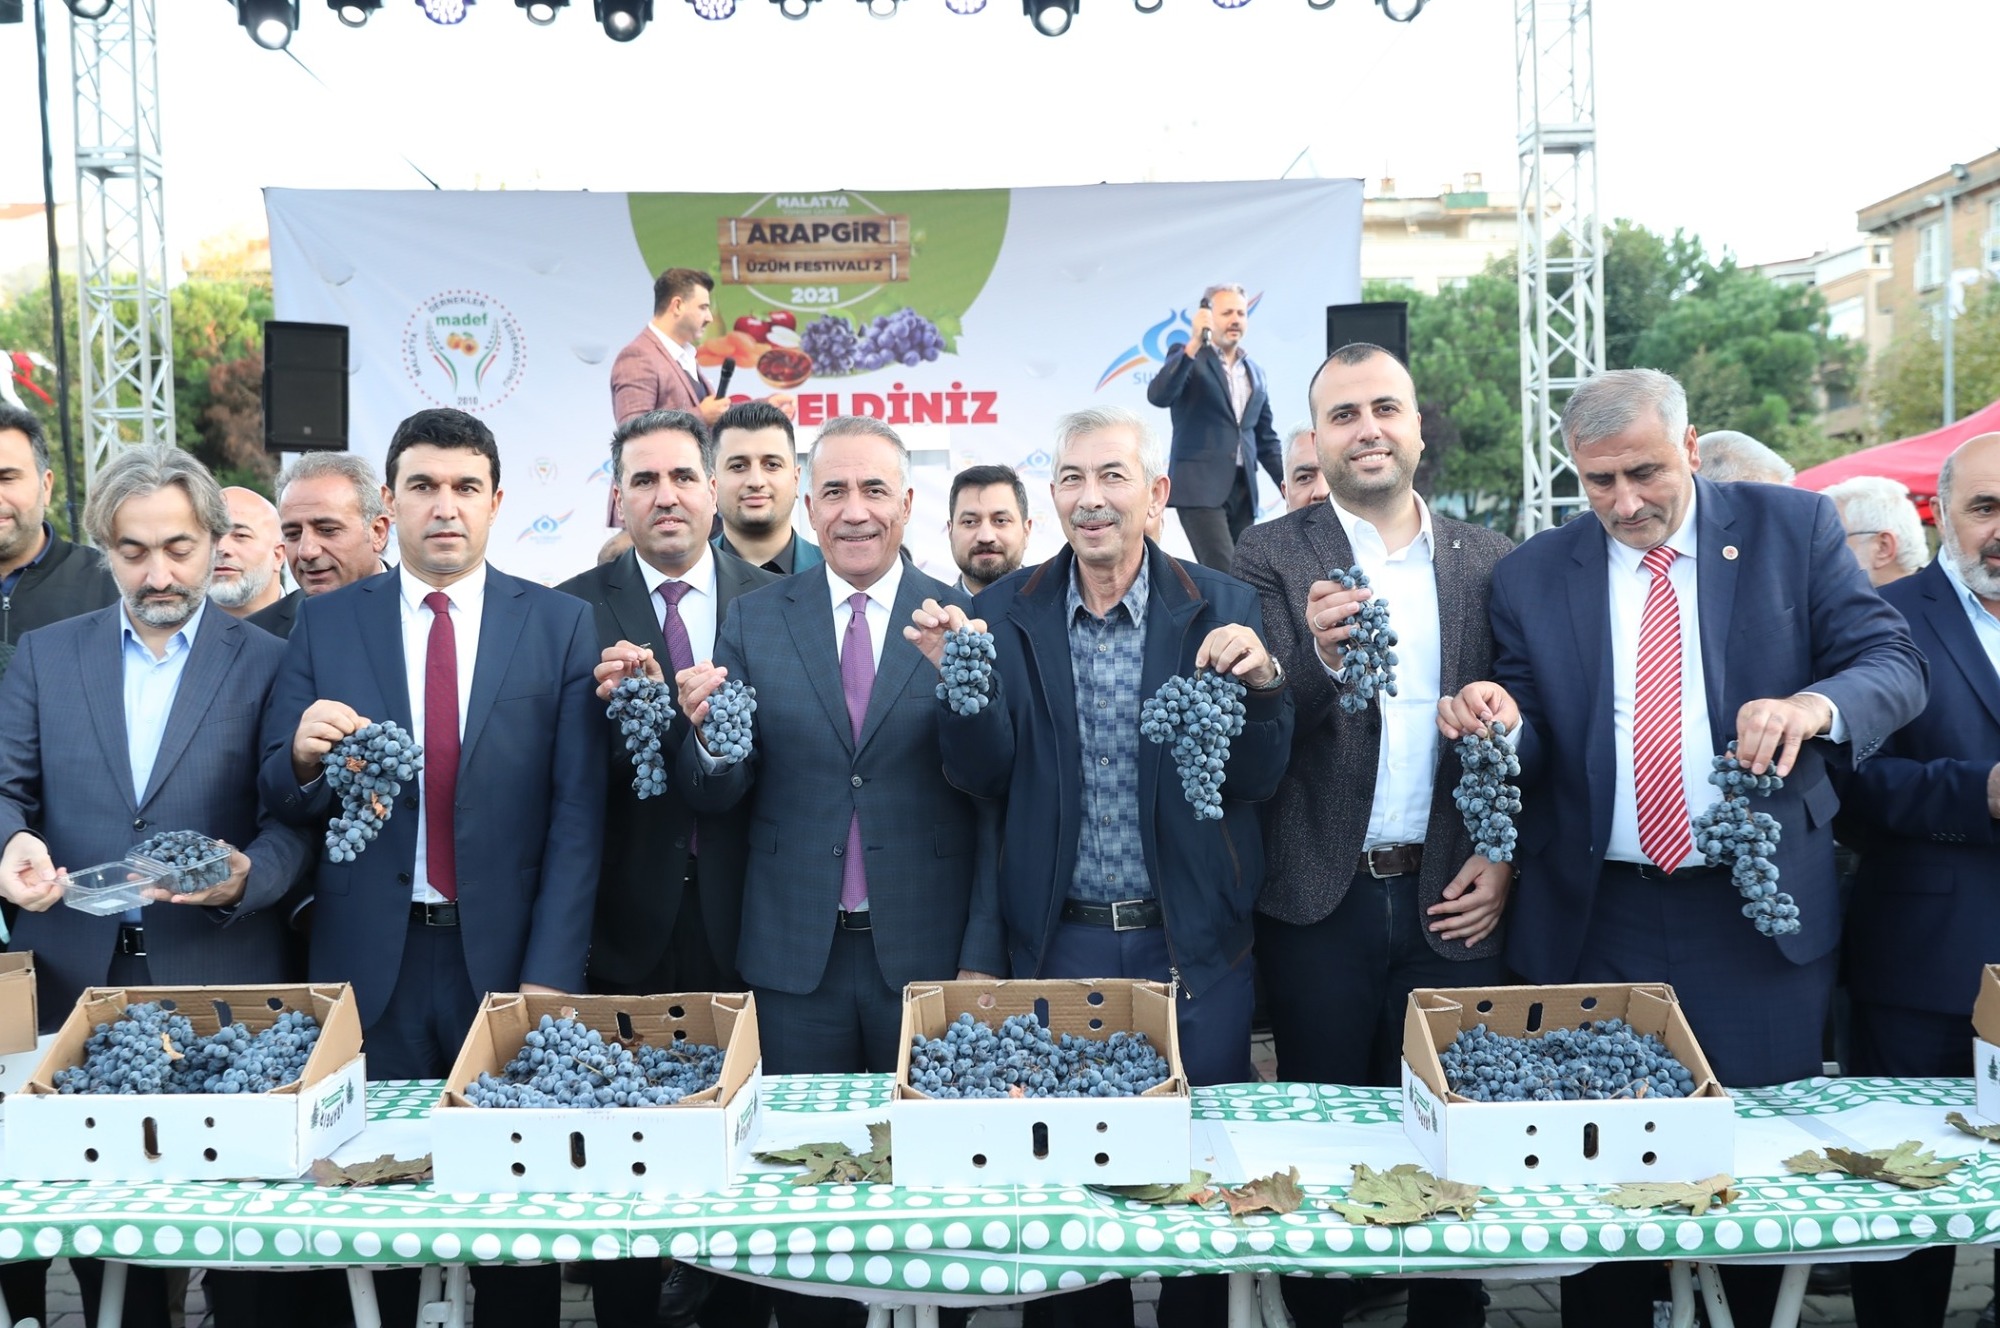 Malatya’nın yöresel lezzetleri Sultangazililerle buluşuyor  Arapgir Üzüm Festivali Başladı